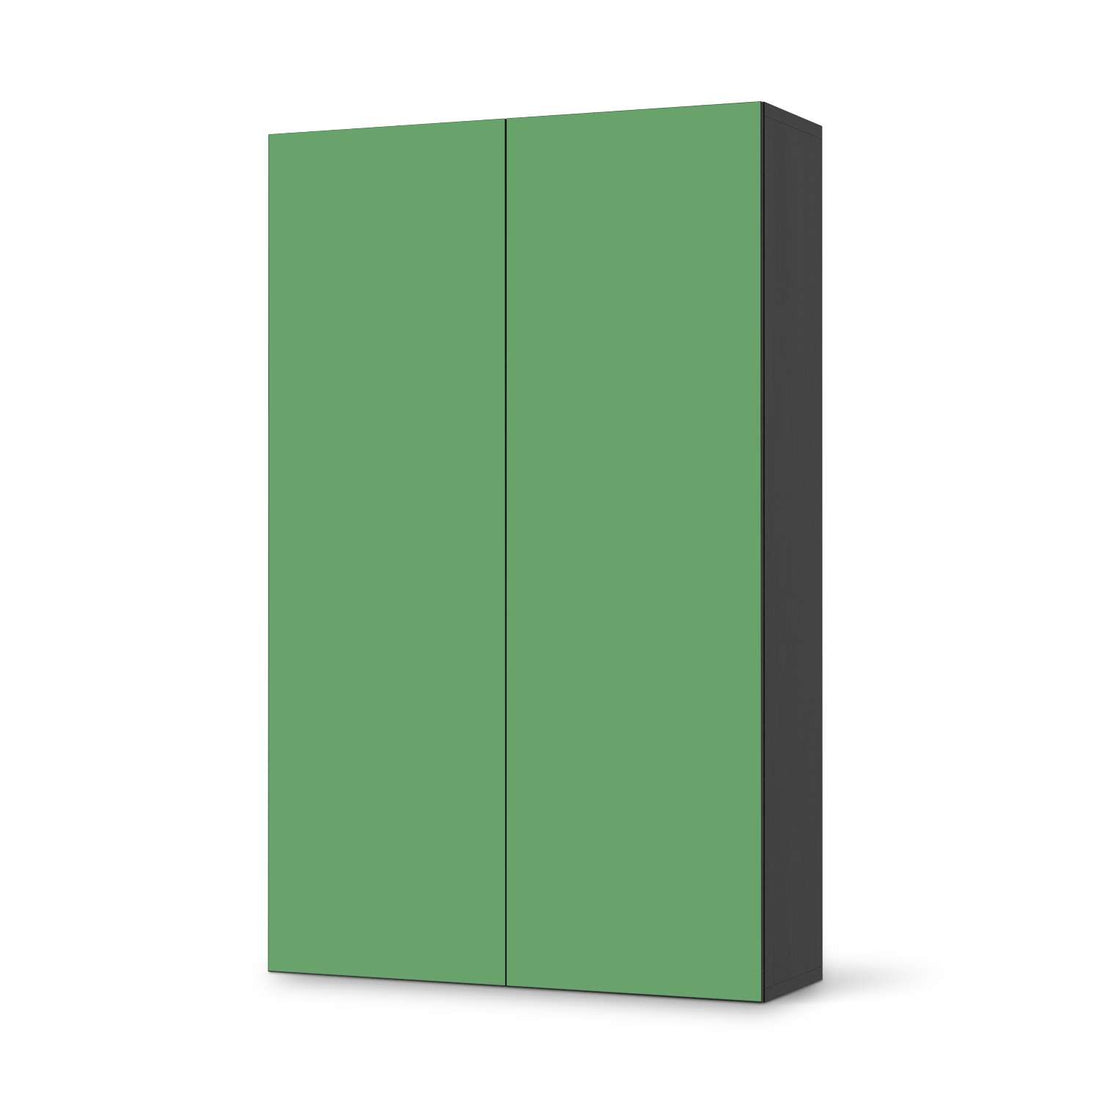 Klebefolie für Möbel Grün Light - IKEA Besta Schrank Hoch 2 Türen - schwarz